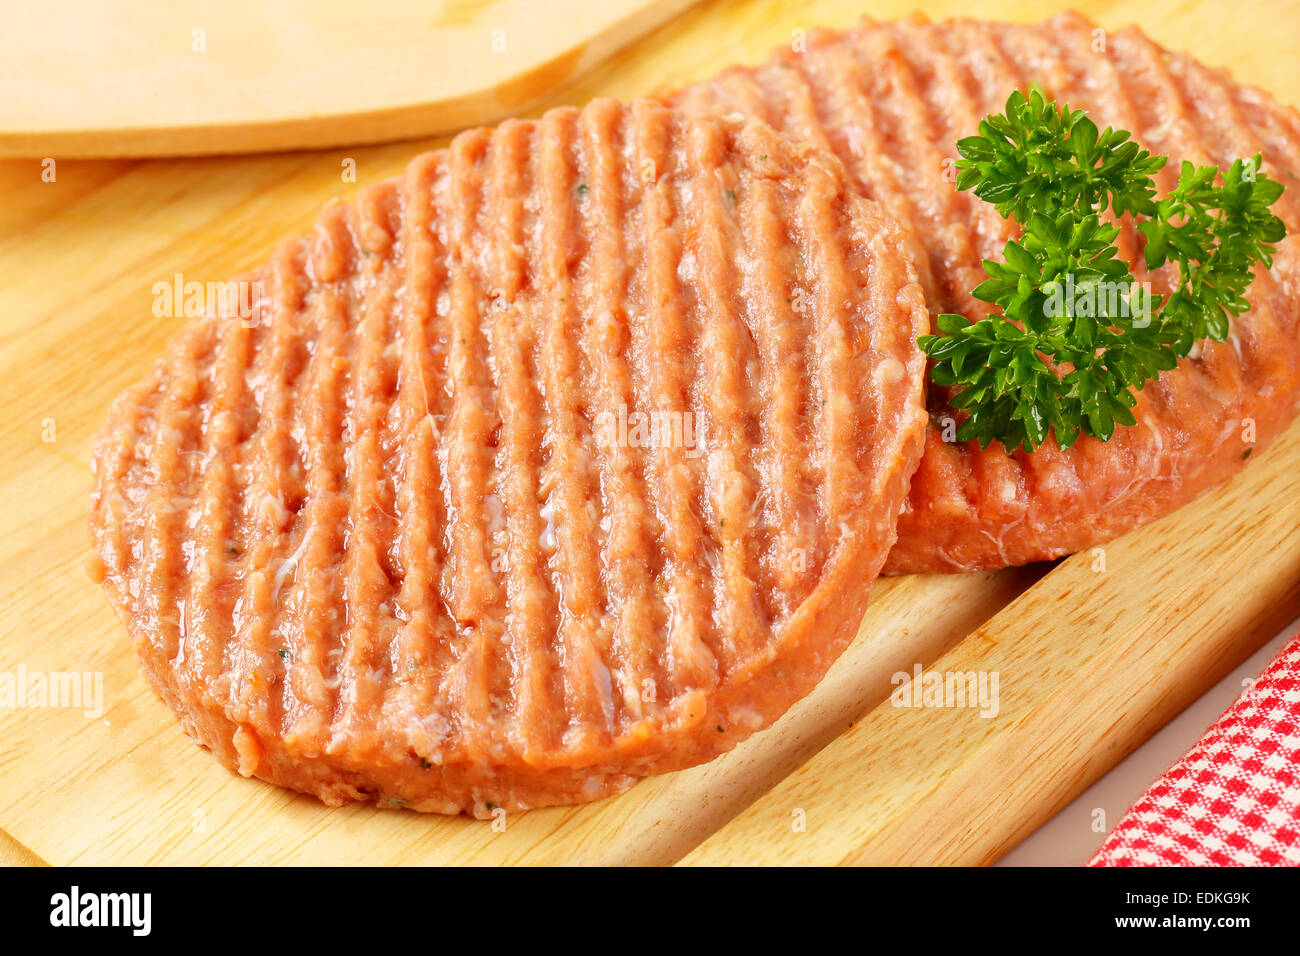 Raw burger patties on cutting board Stock Photo